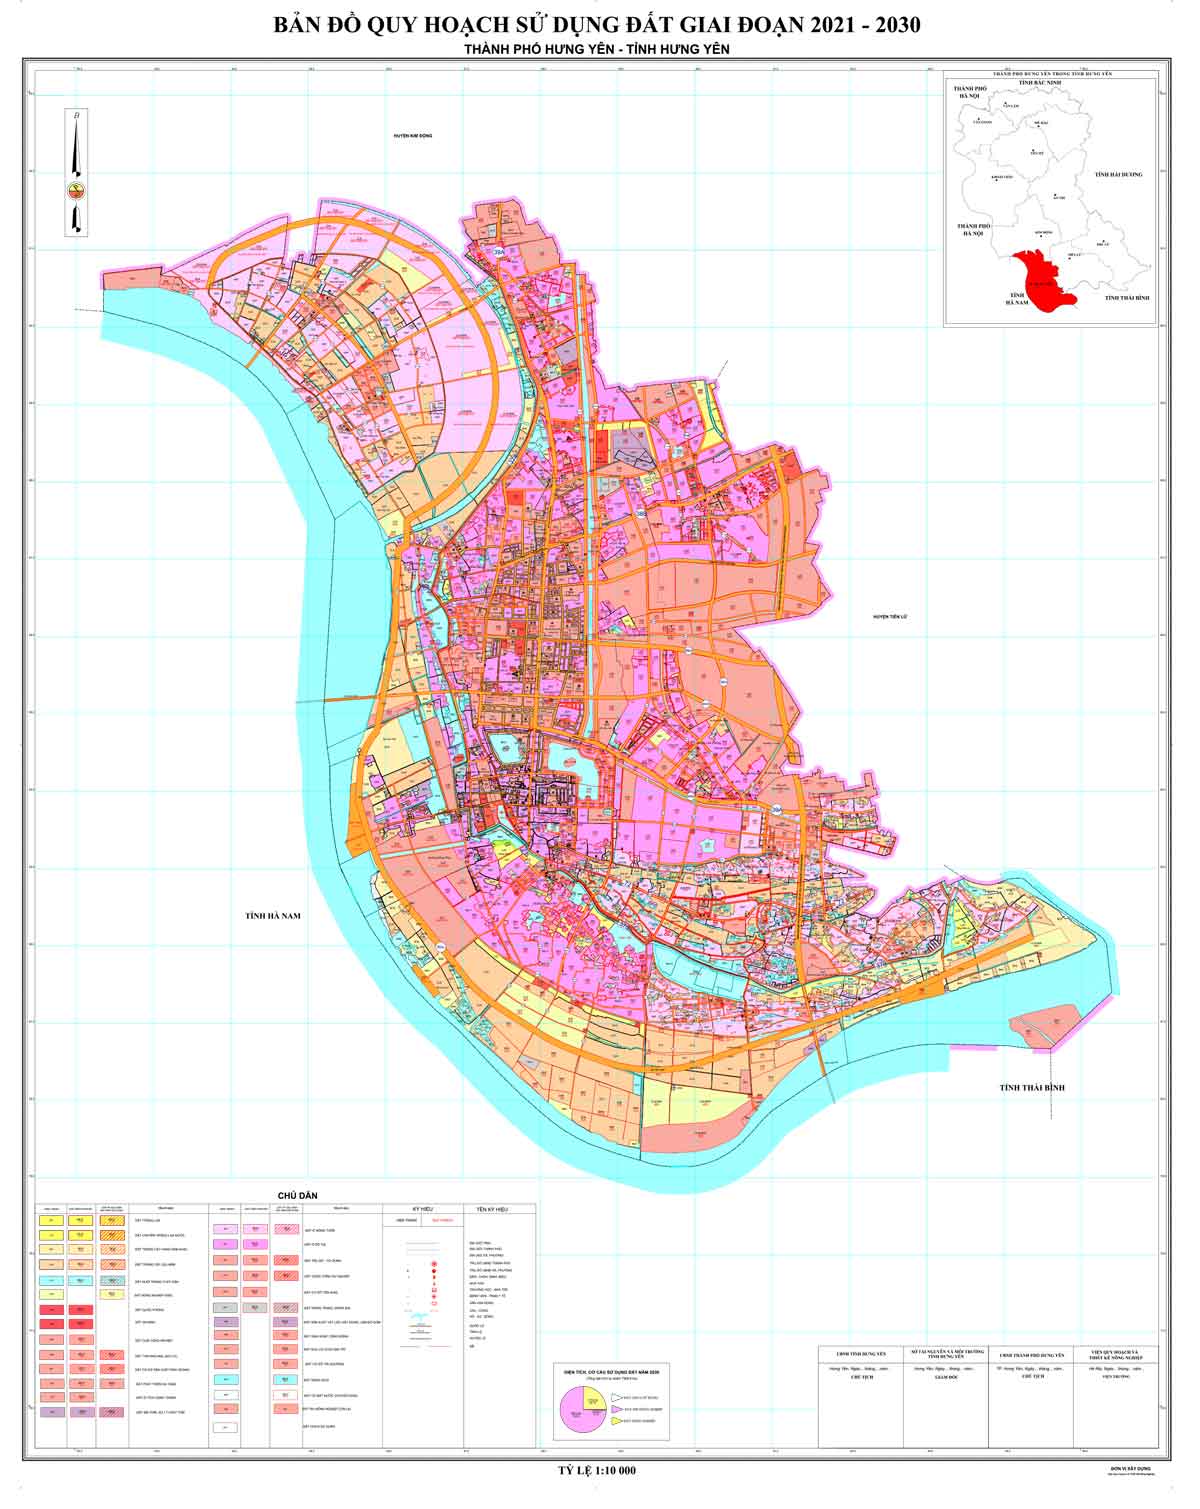 Bản đồ QHSDĐ TP Hưng Yên đến năm 2030